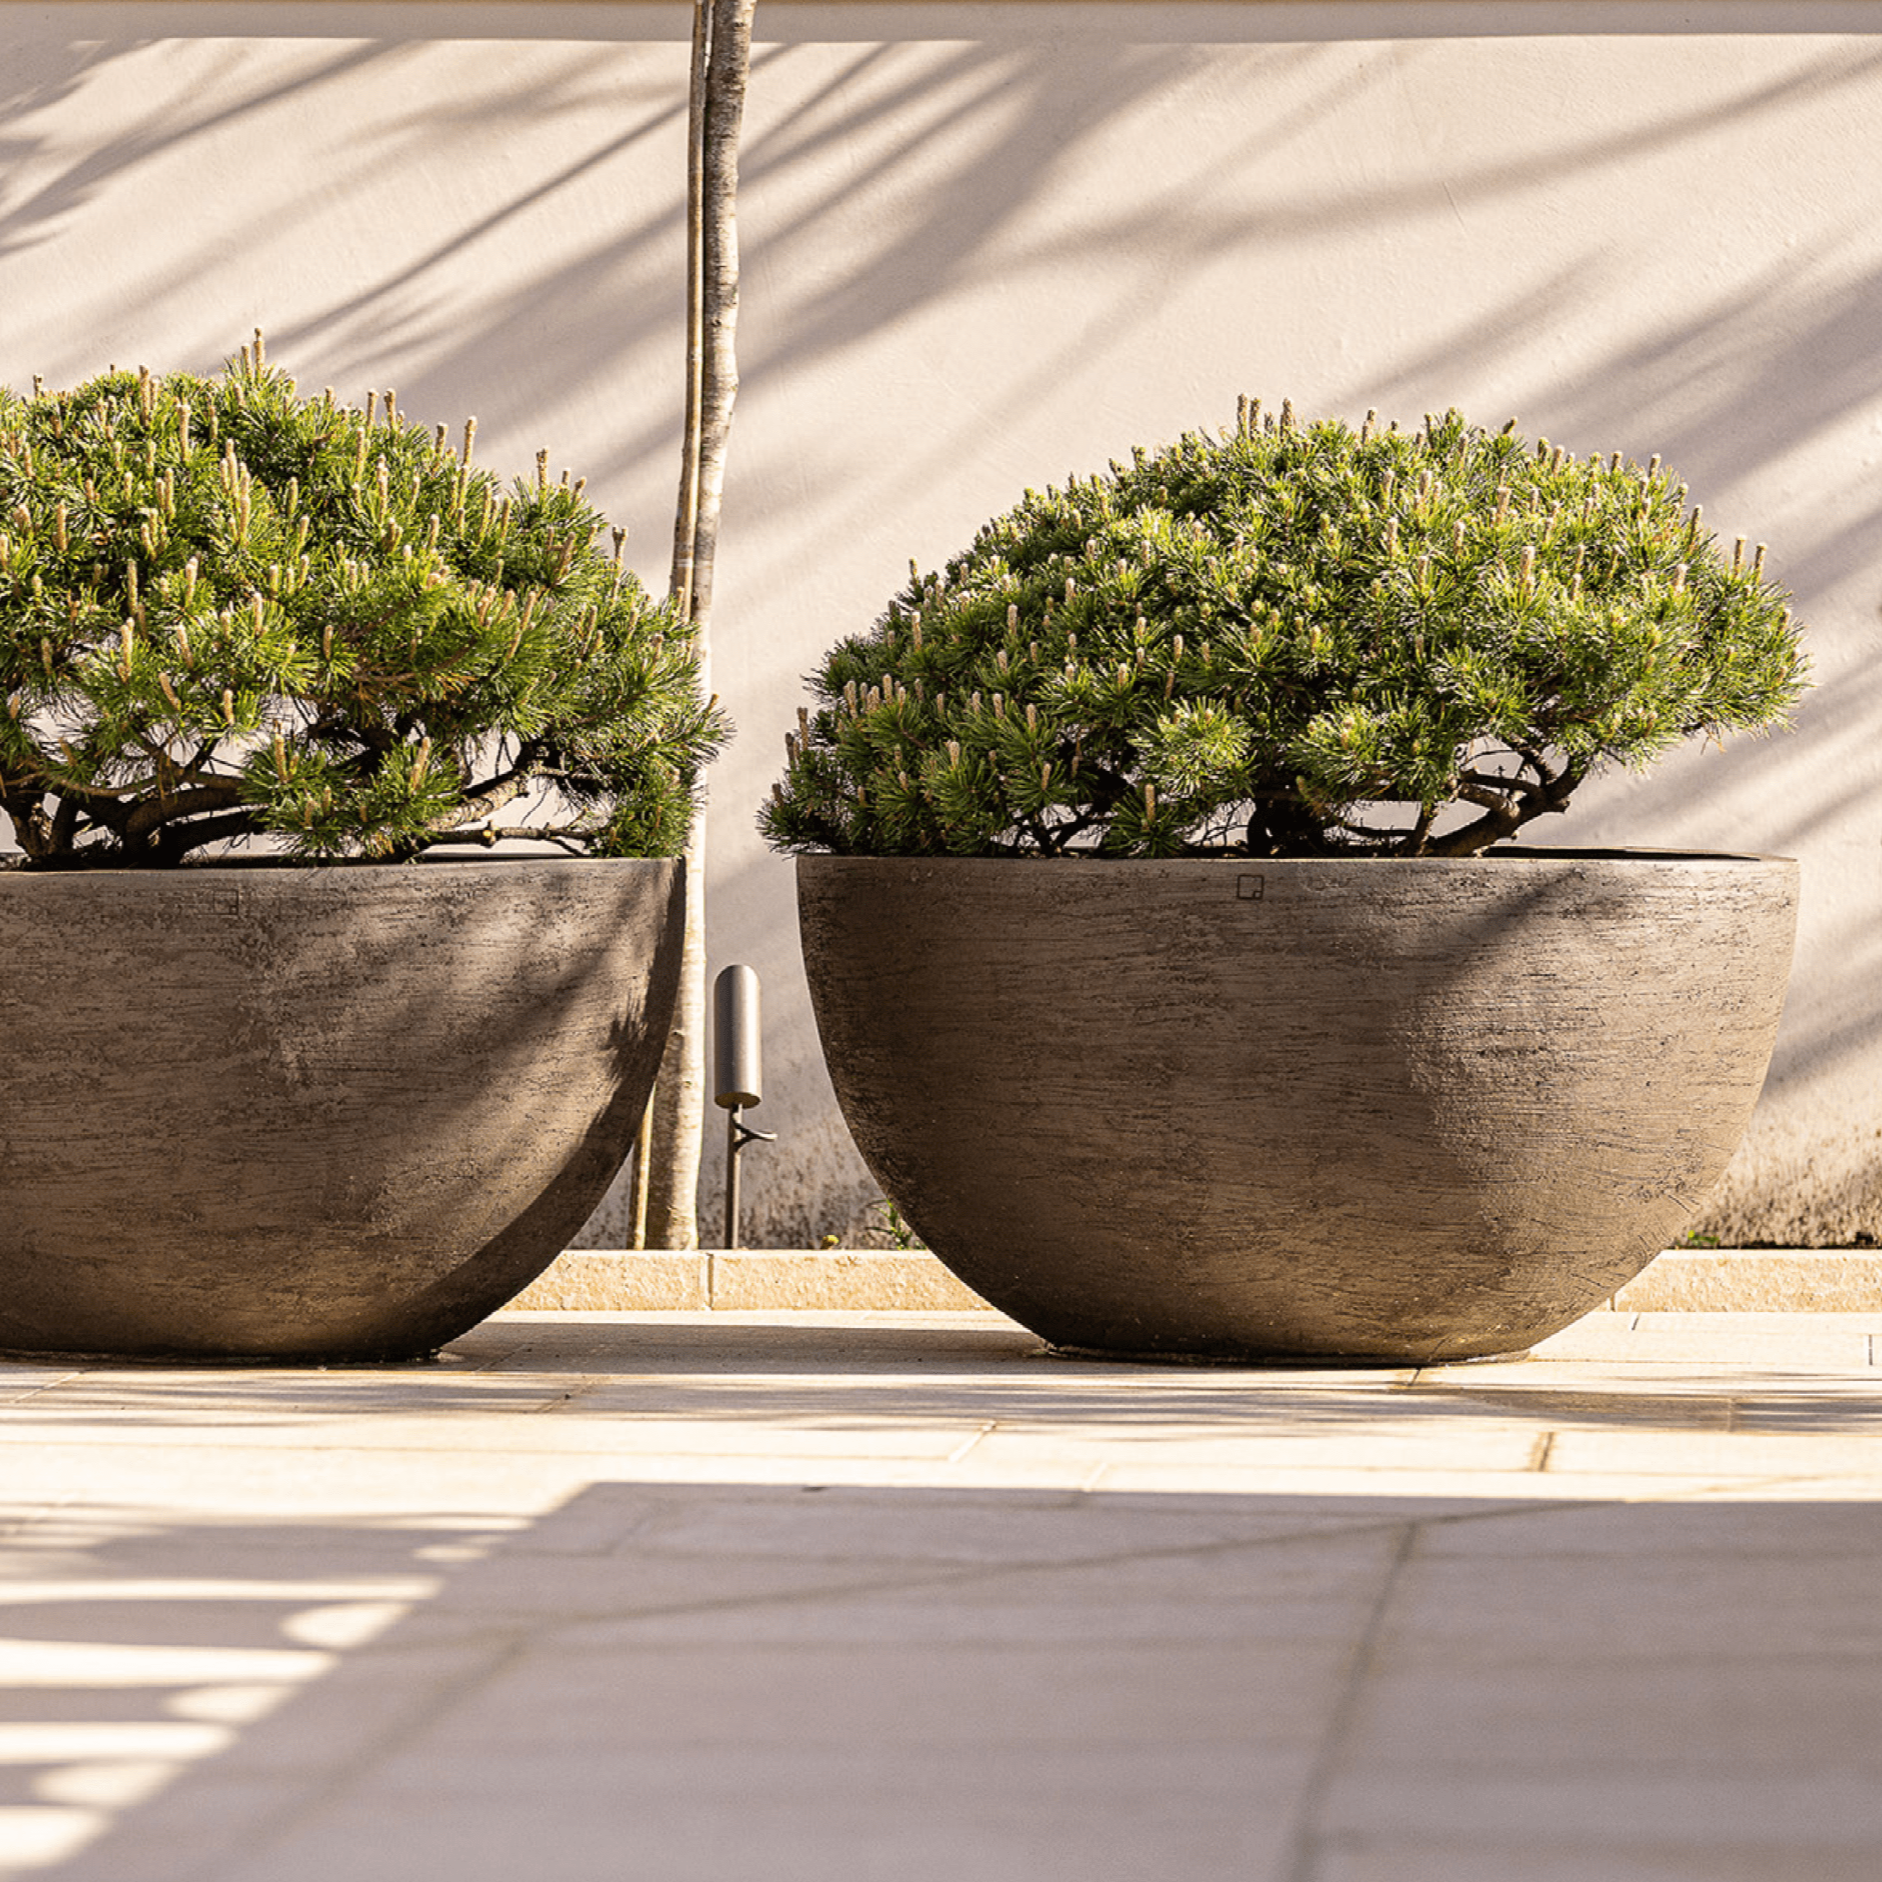 Das Pflanzgefäß U12065 von Atelier Vierkant ist eine hervorragende Wahl für jeden, der eine hochwertige und stilvolle Option für seine Pflanzen sucht. Es ist ein Statement-Stück, das sowohl im Innen- als auch im Außenbereich ein Blickfang ist und jede Umgebung aufwertet.